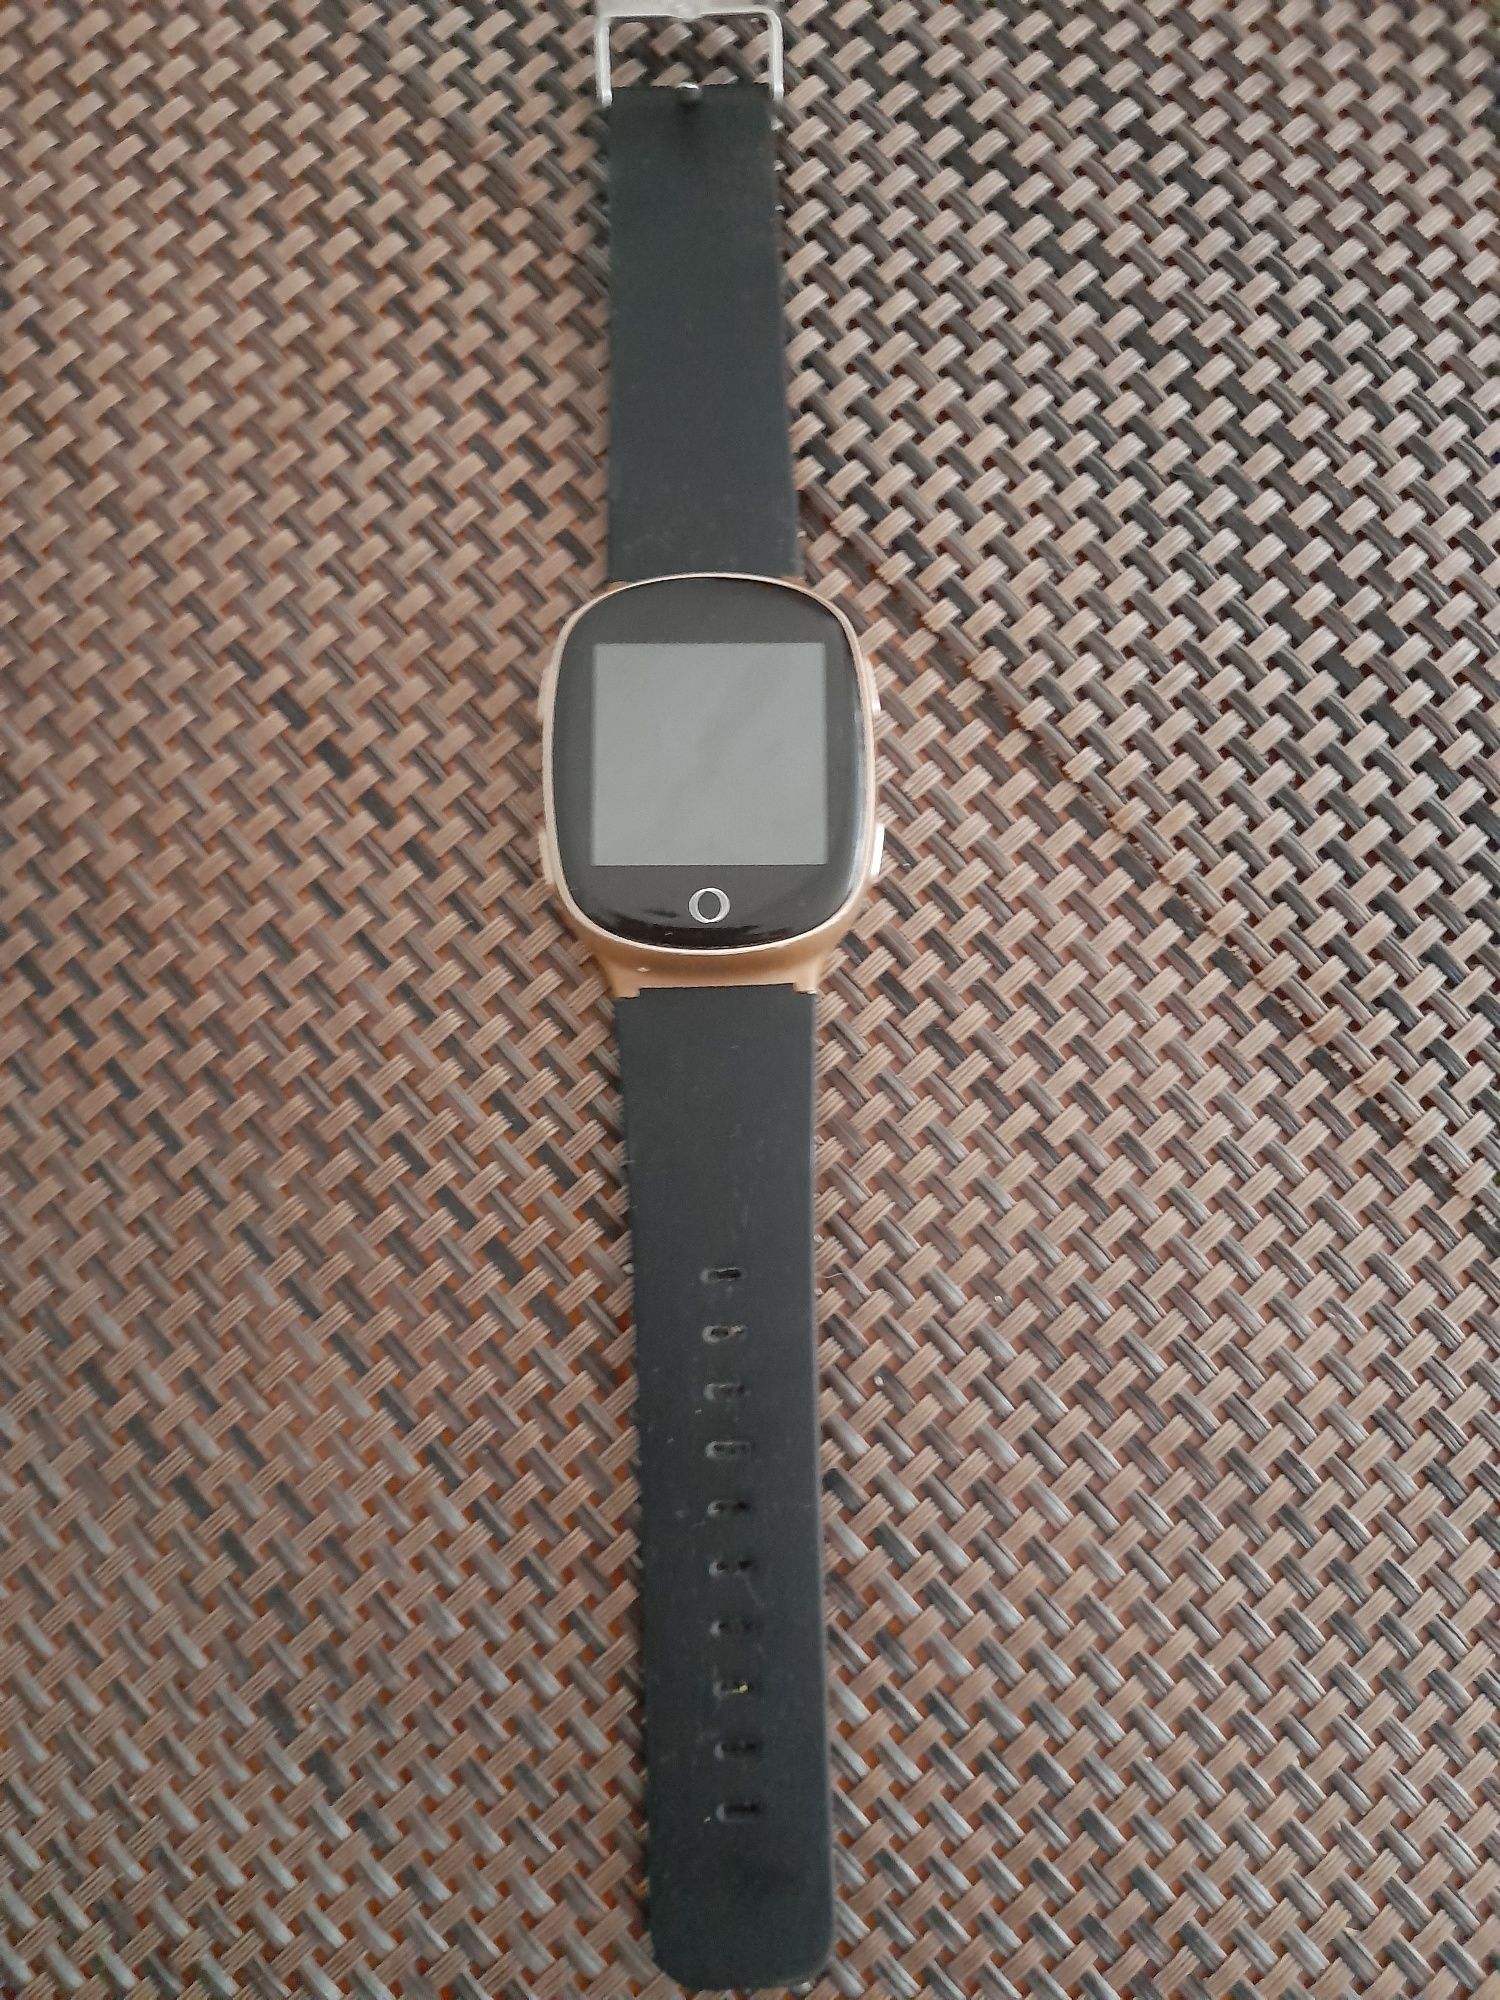 Смарт-часы Smart Baby Watch S200 Gold